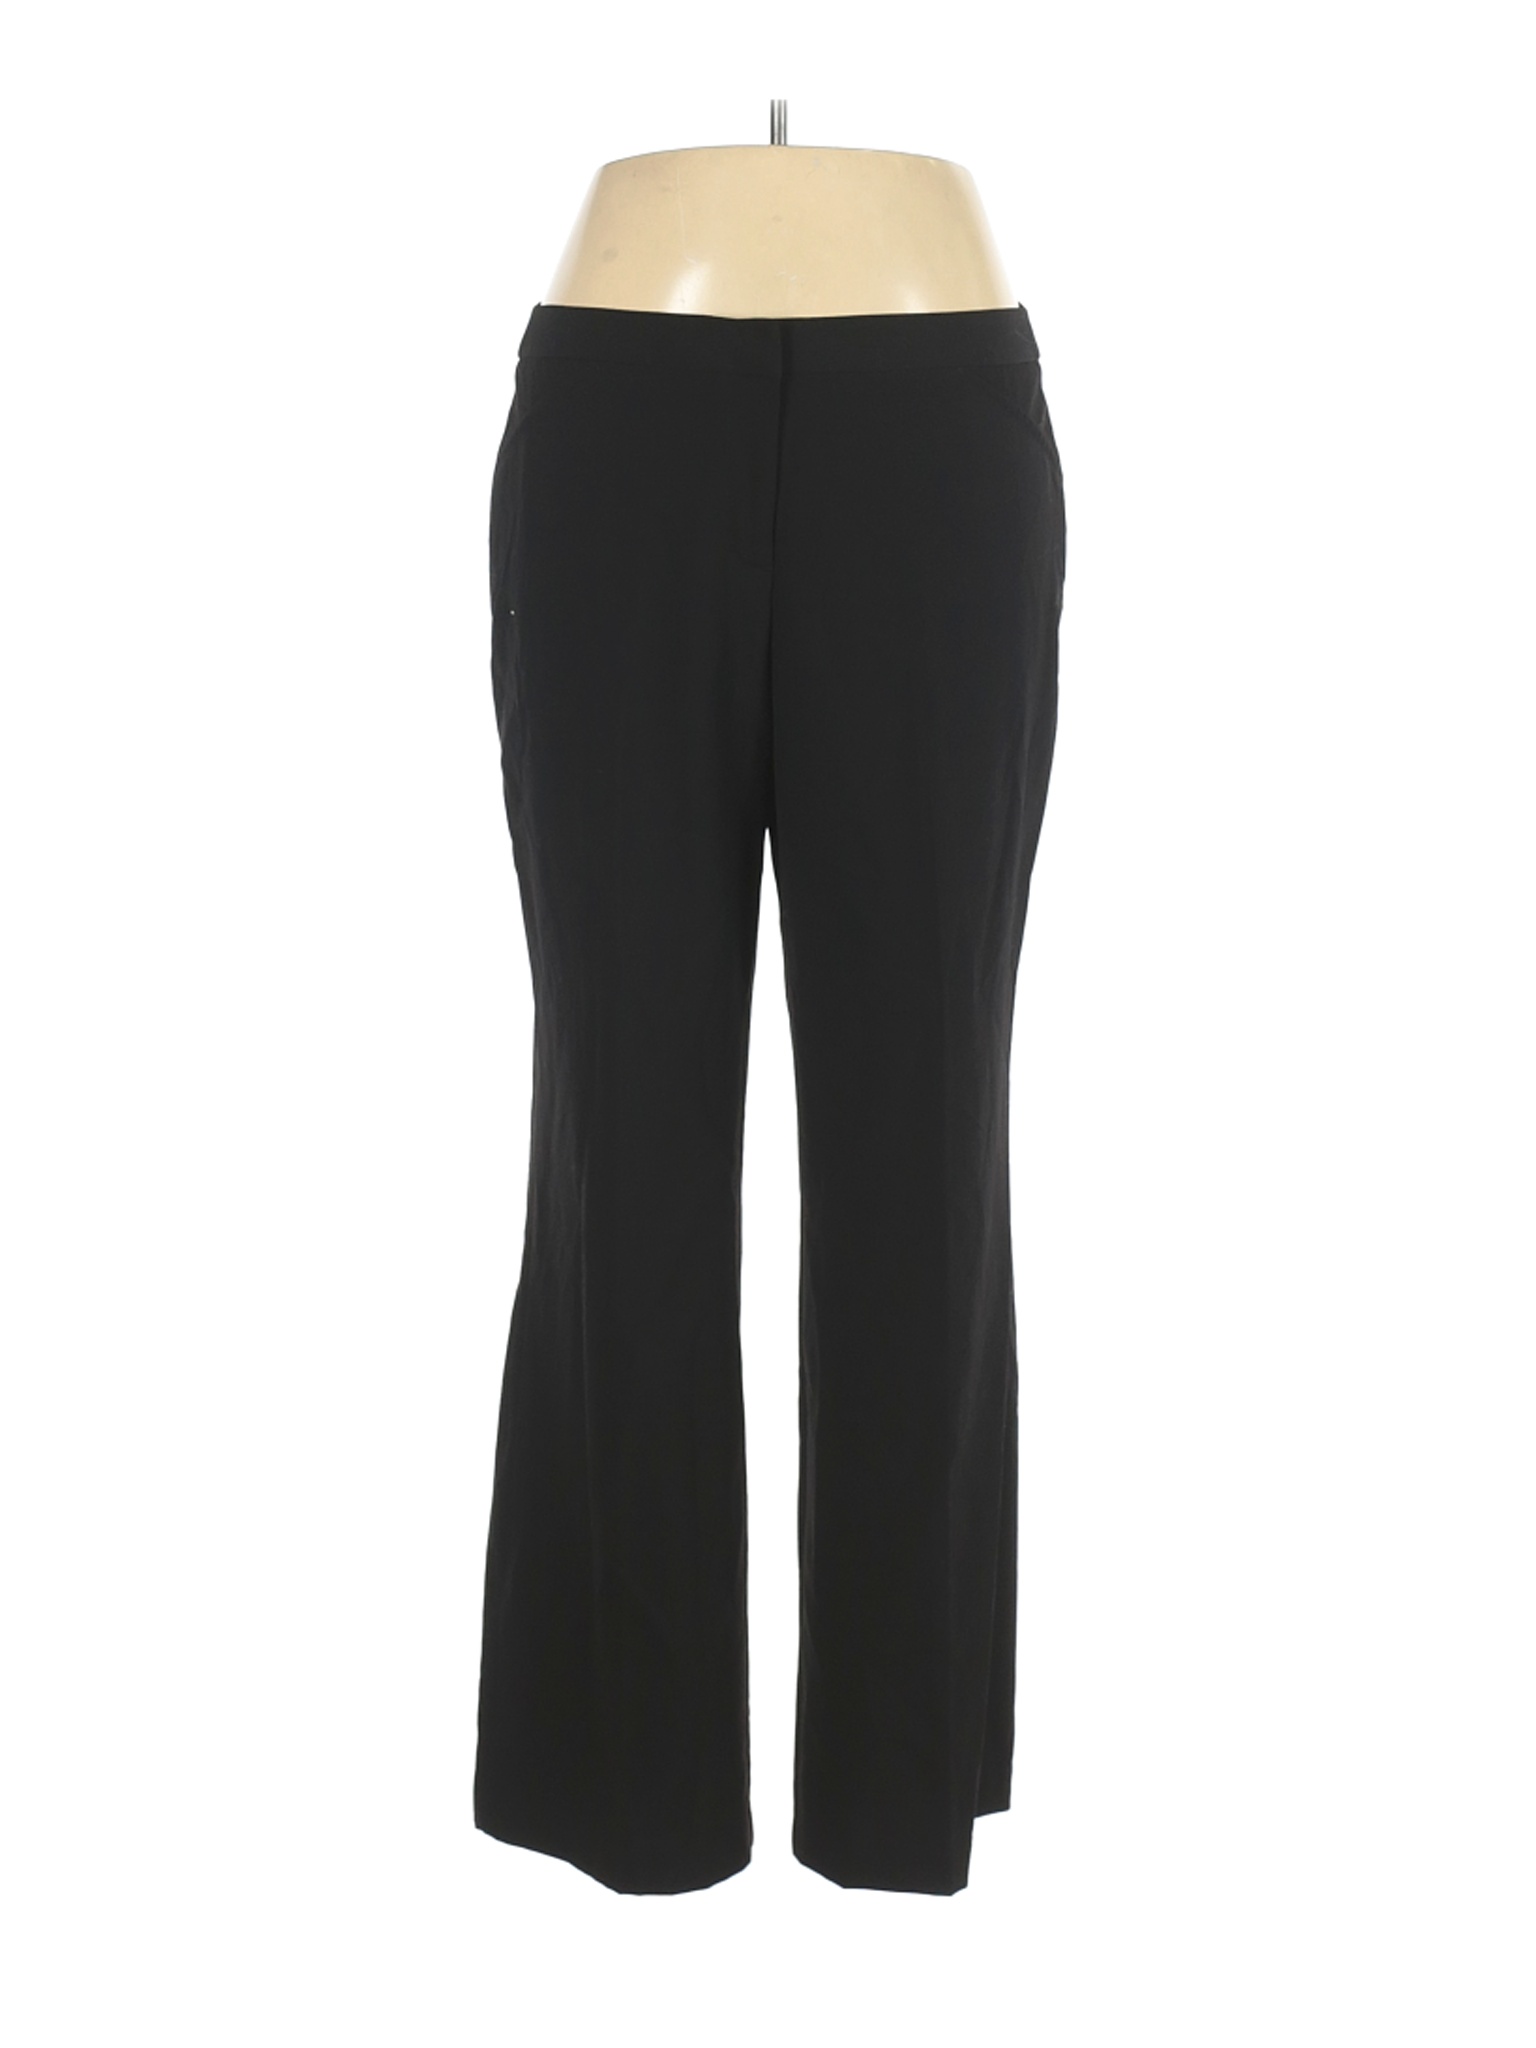 Nicole Miller Women Black Dress Pants 16 | eBay